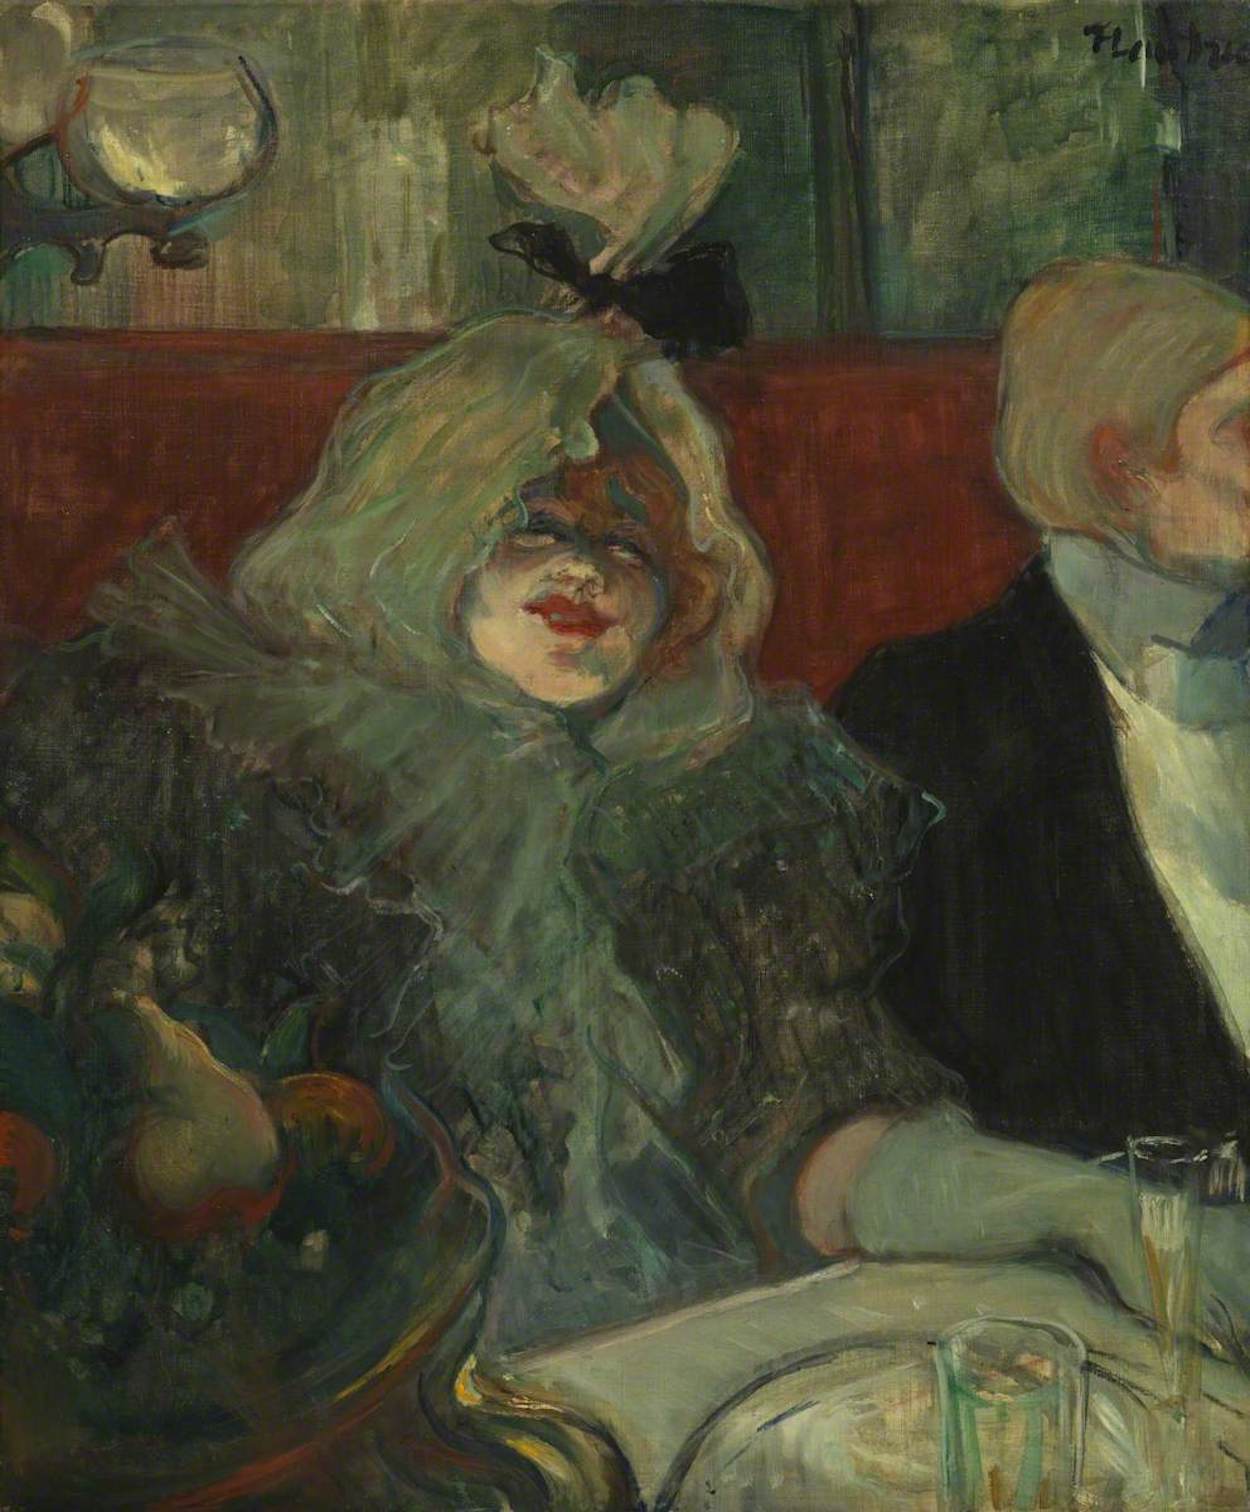 Σε ένα ιδιωτικό δωμάτιο εστιατορίου by Ανρ Ντε Τουλούζ-Λωτρέκ - c. 1899 - 55,1 x 46 εκ. 